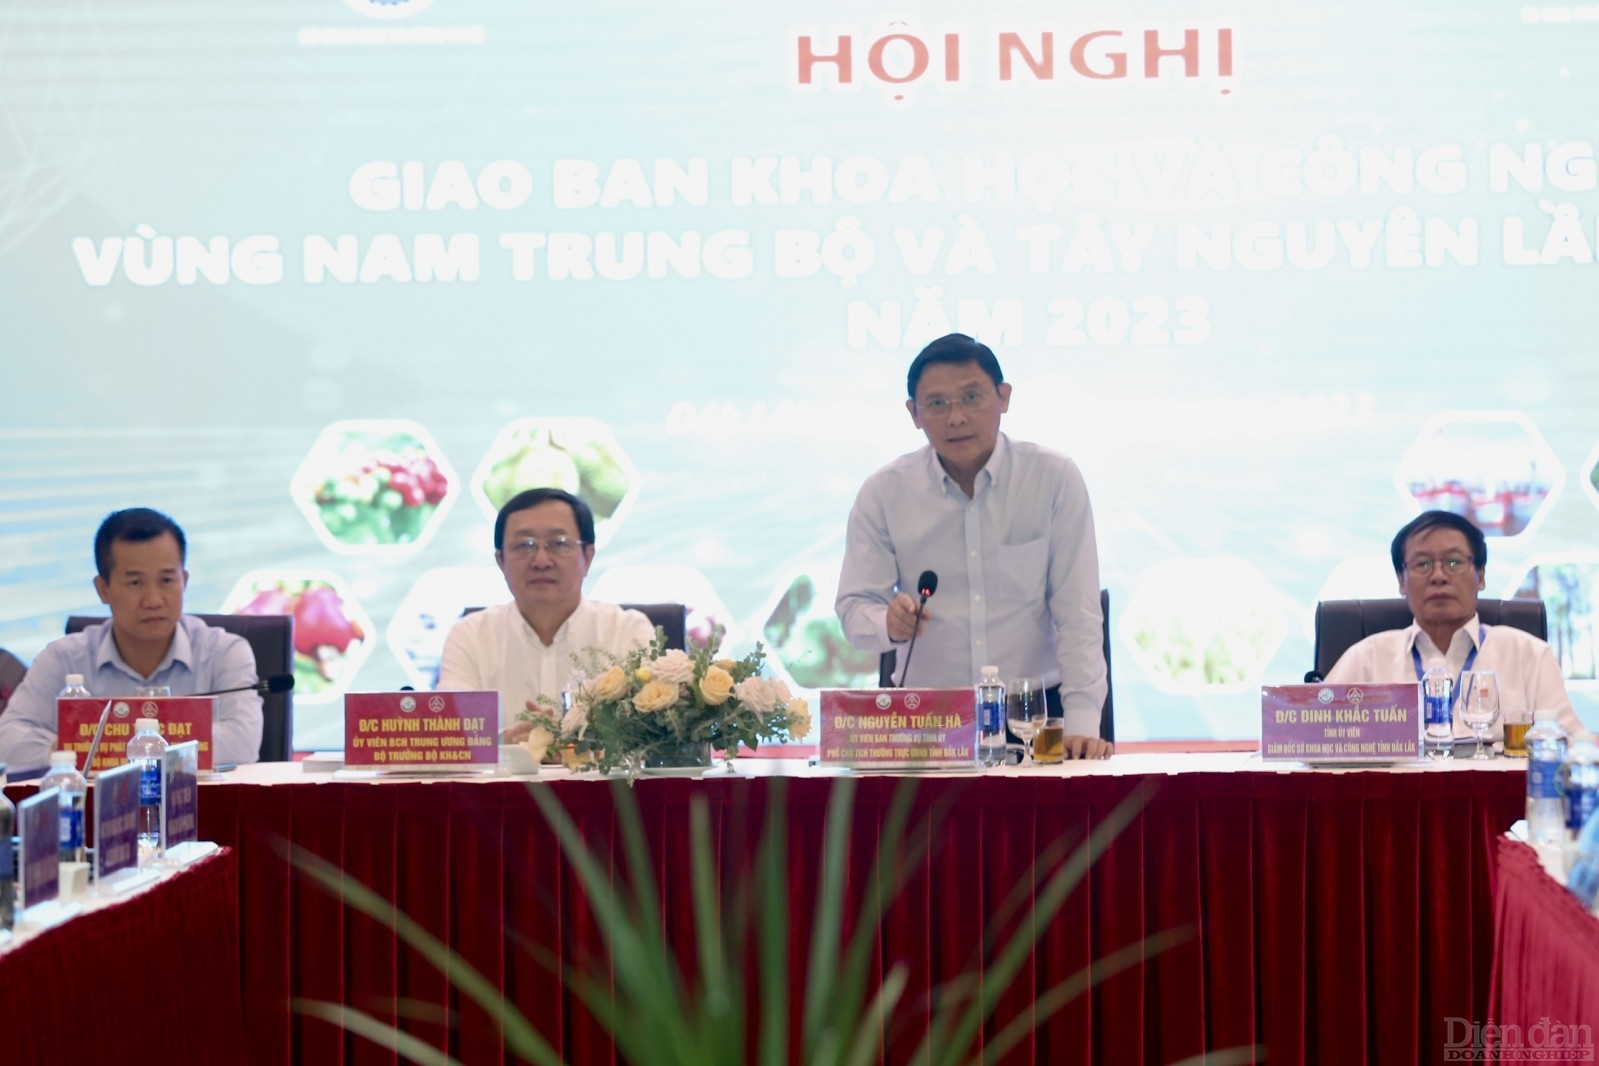 Bộ trưởng Bộ KH&CN Huỳnh Thành Đạt, Phó Chủ tịch Thường trực UNBD tỉnh Đắk Lắk Đinh Khắc Tuấn và các đại biểu tại hội nghị